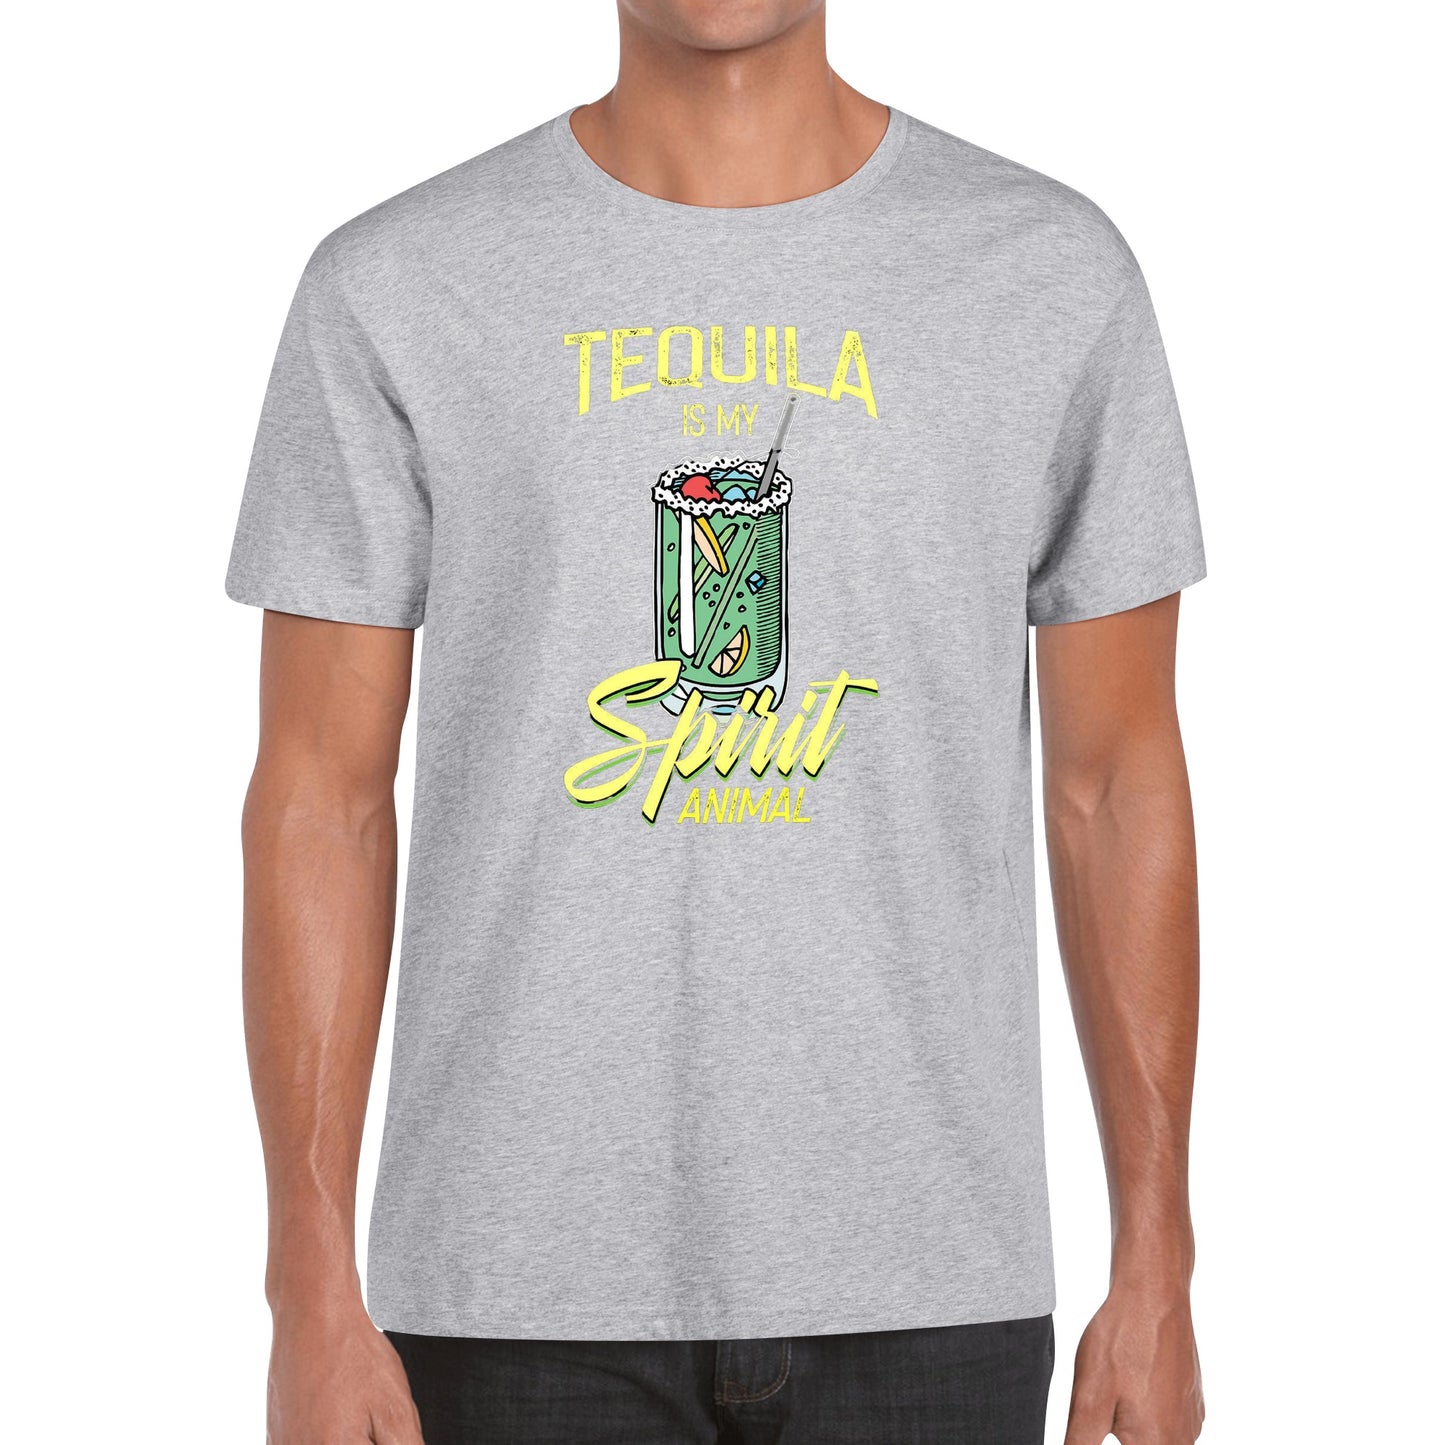 T-Shirt Tequila art